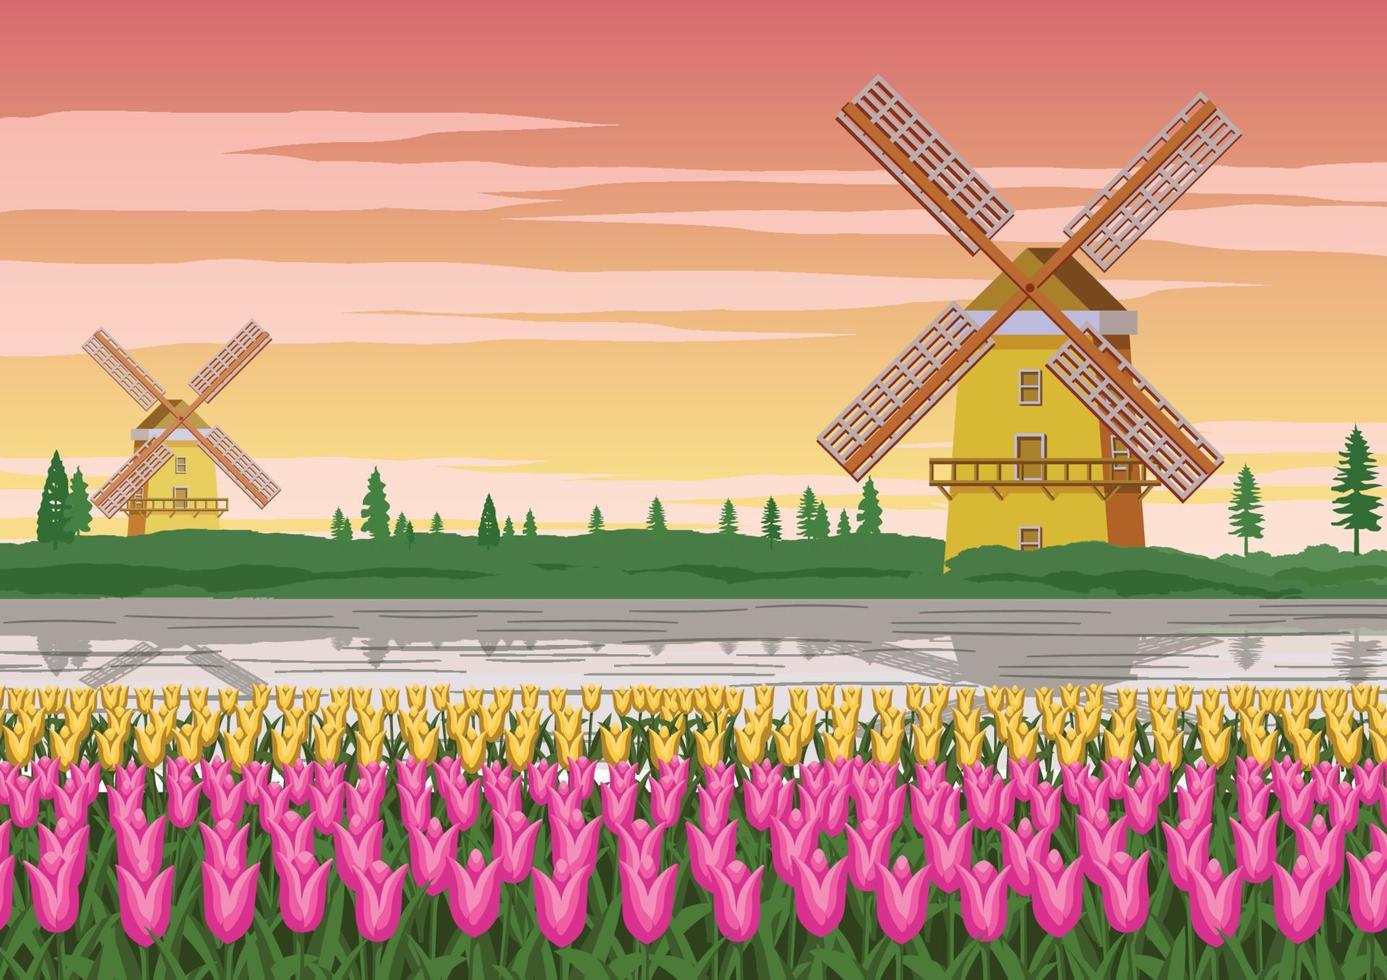 Jardin de tulipes, célèbre symbole de la Hollande et moulin à vent autour avec une belle nature, couleur vintage vecteur